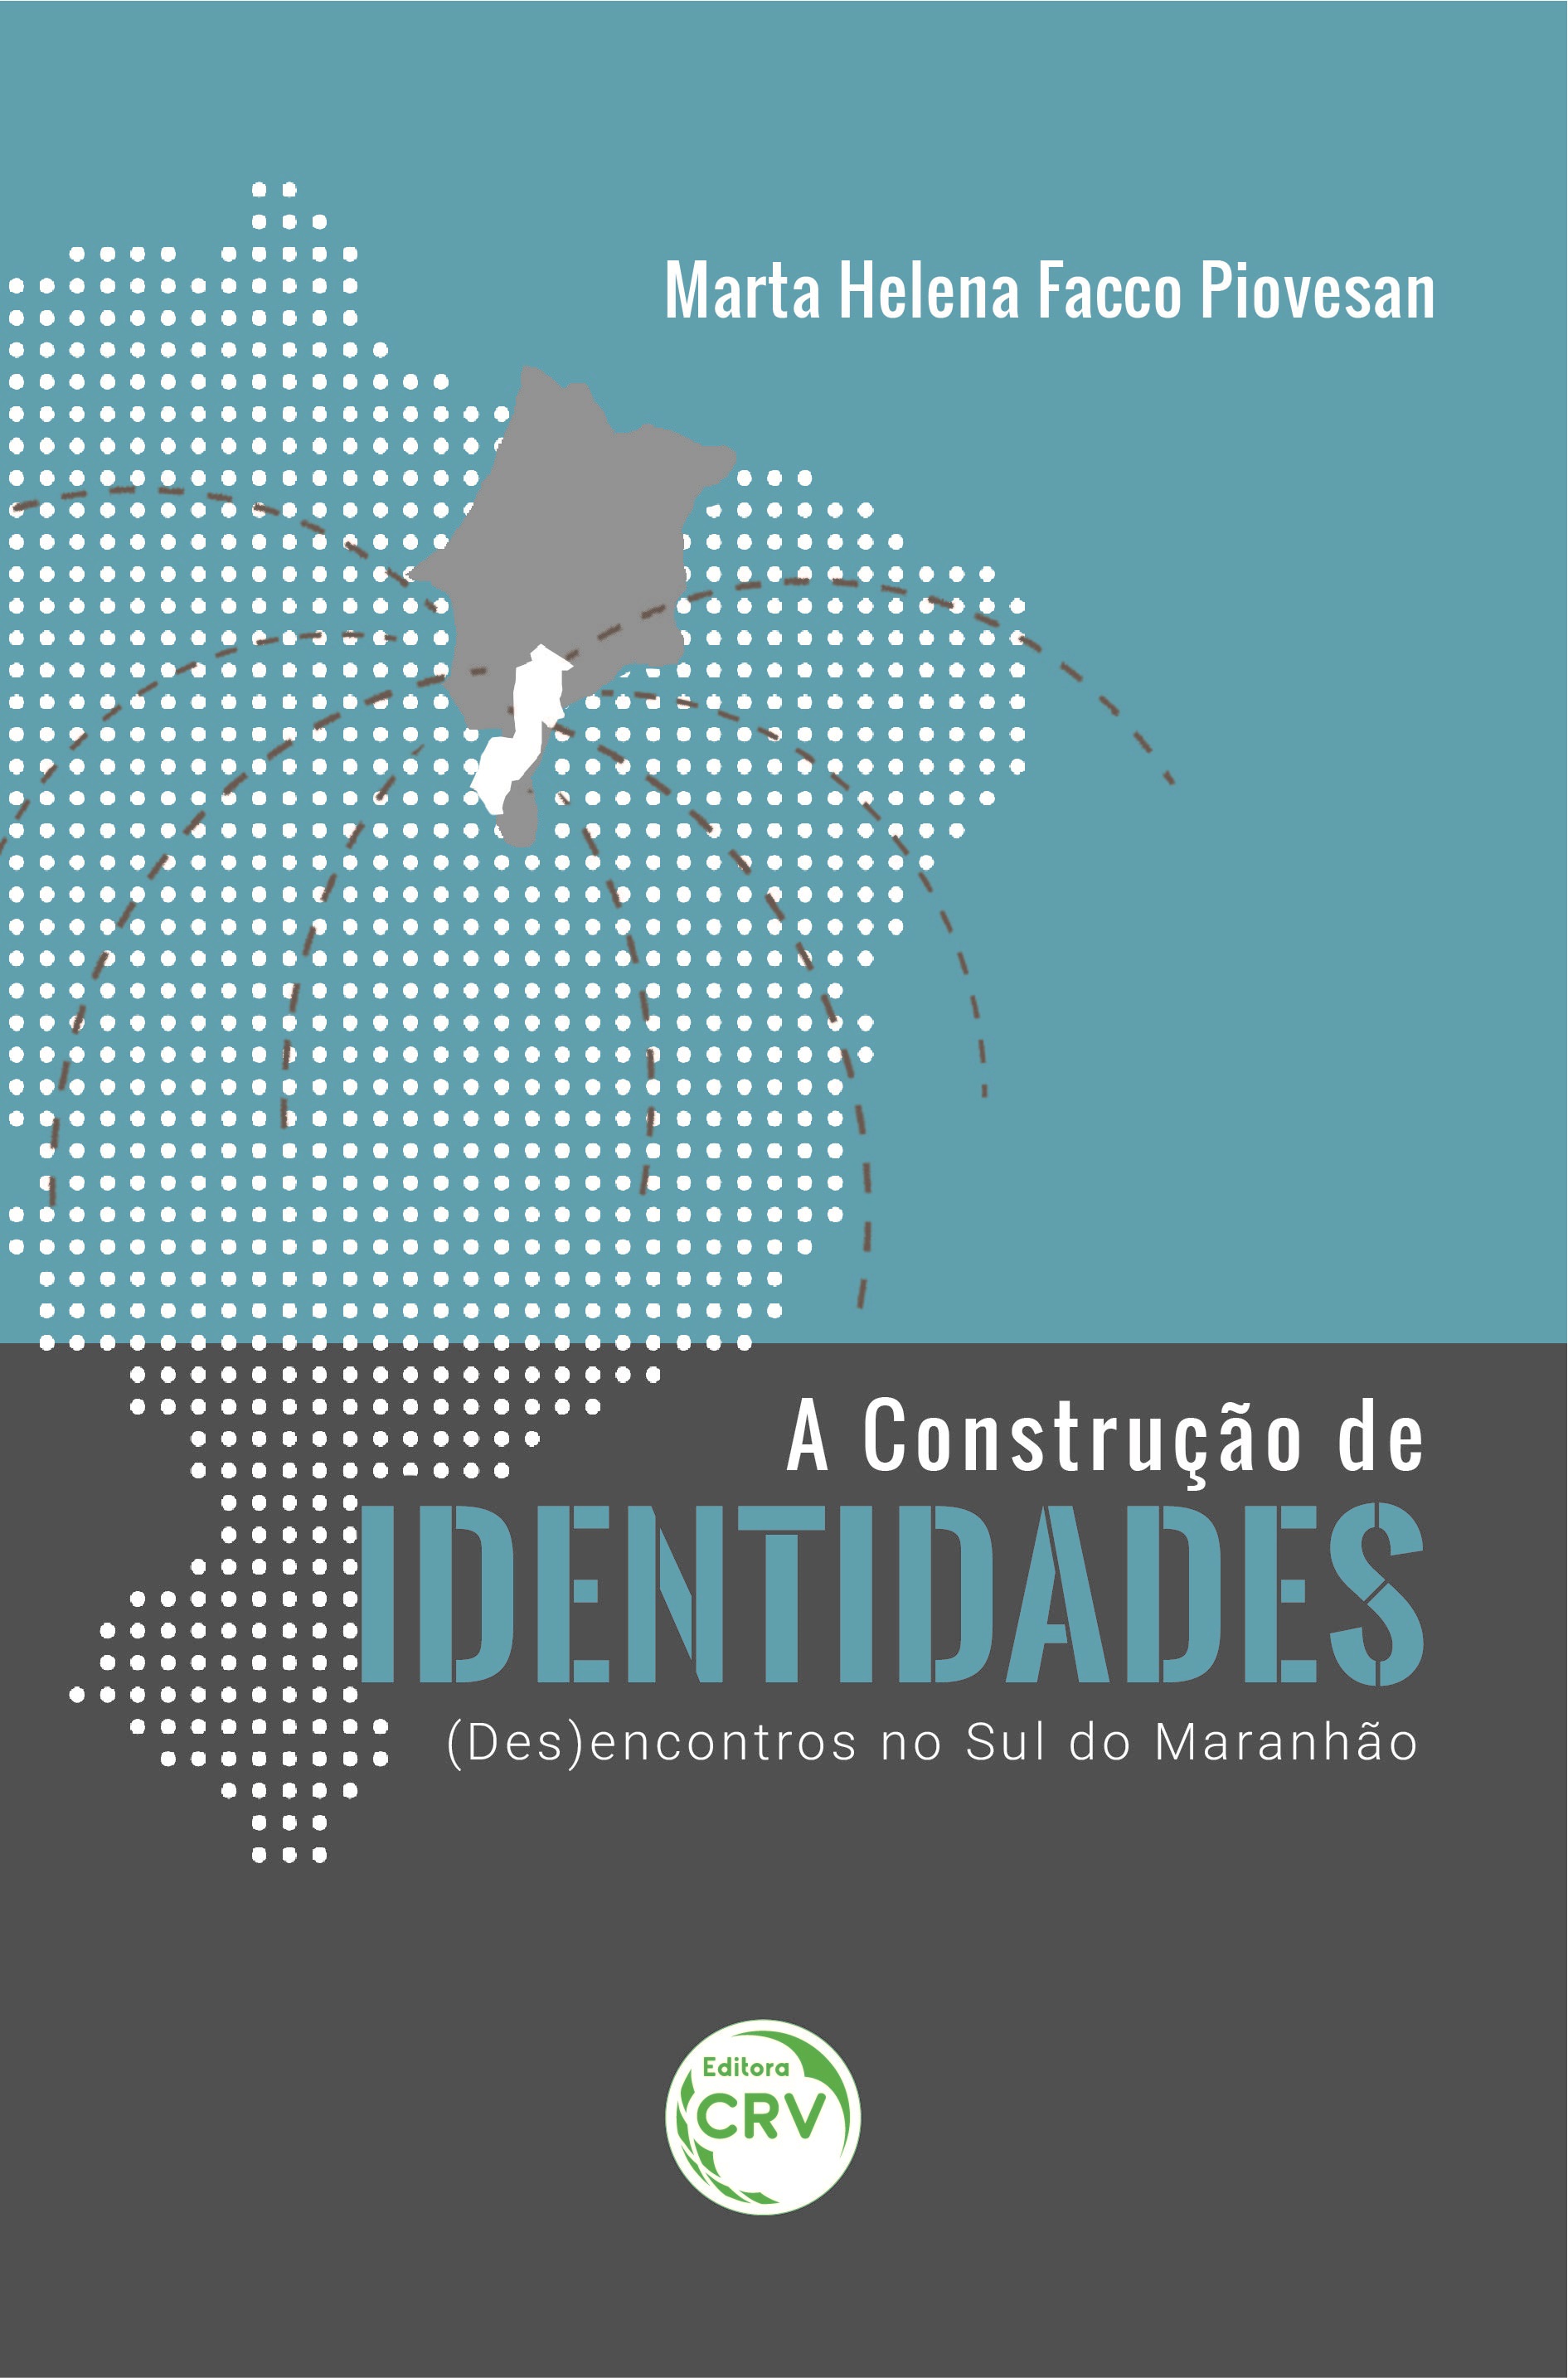 Capa do livro: A CONSTRUÇÃO DE IDENTIDADES: <br>(des)encontros no sul do Maranhão